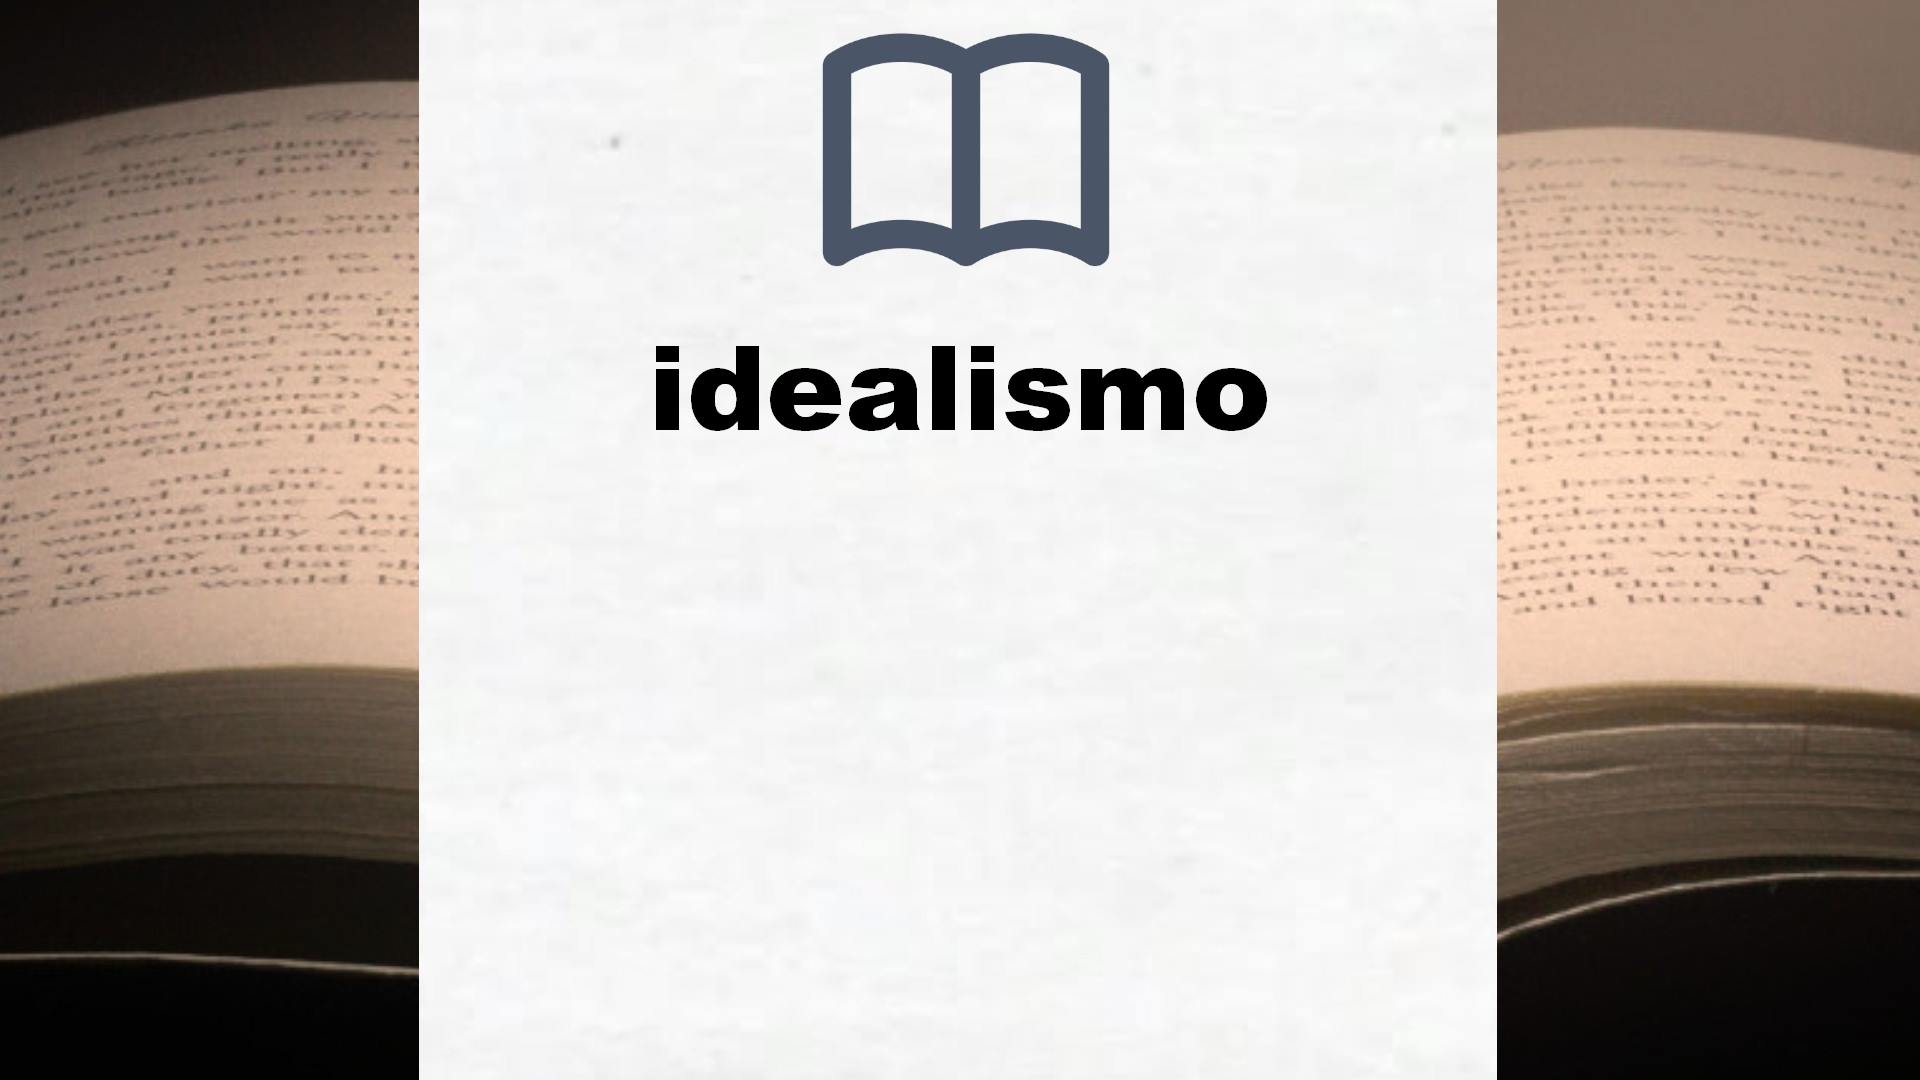 Libros sobre idealismo